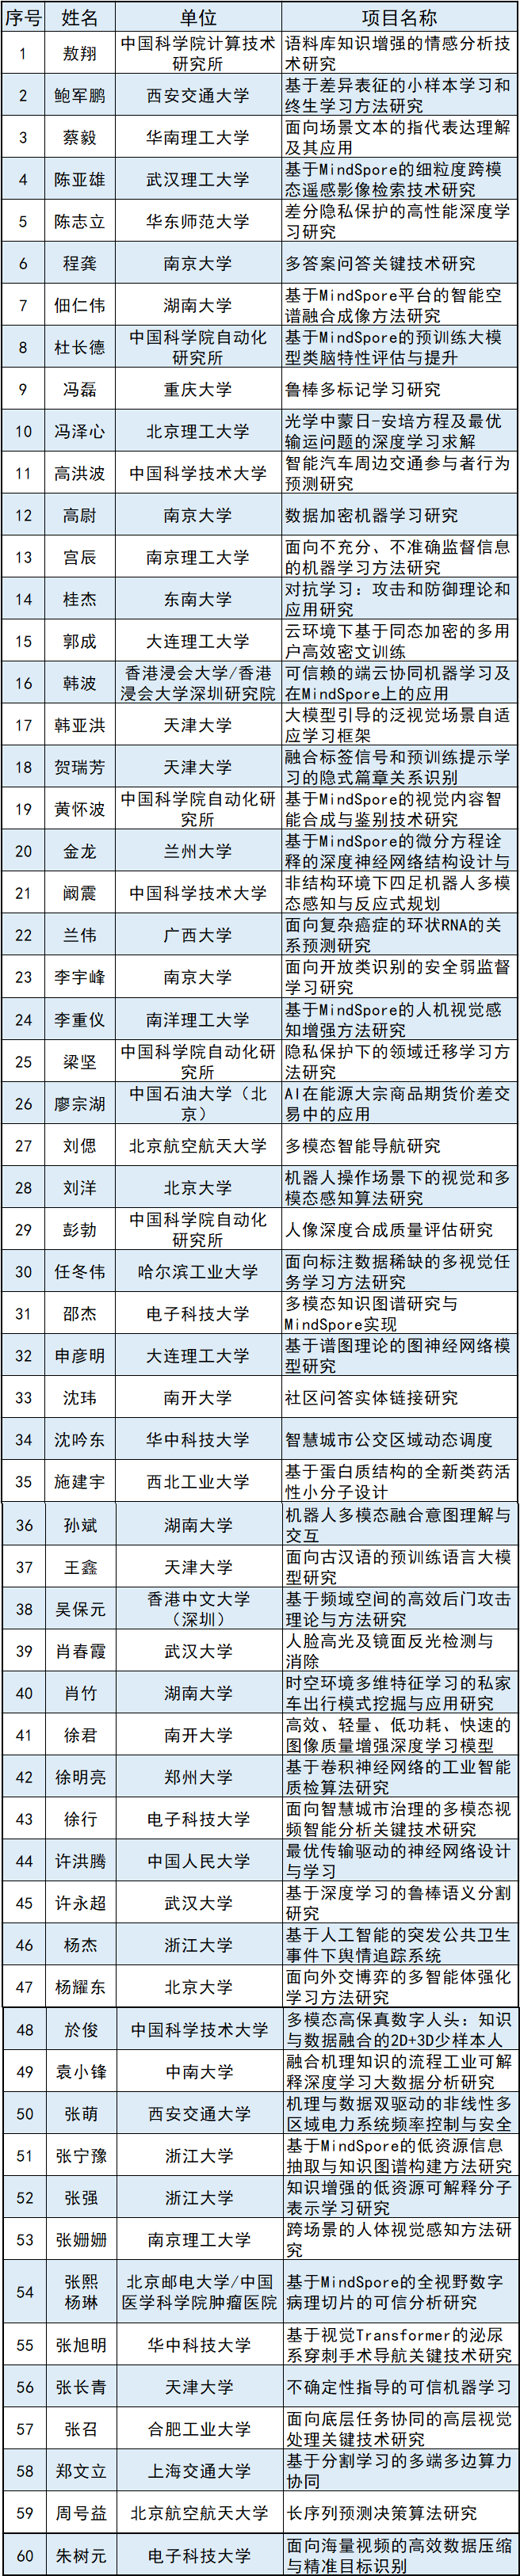 华为60的手机卡
:学会动态丨2022年度中国人工智能学会-华为MindSpore学术奖励基金入选名单出炉